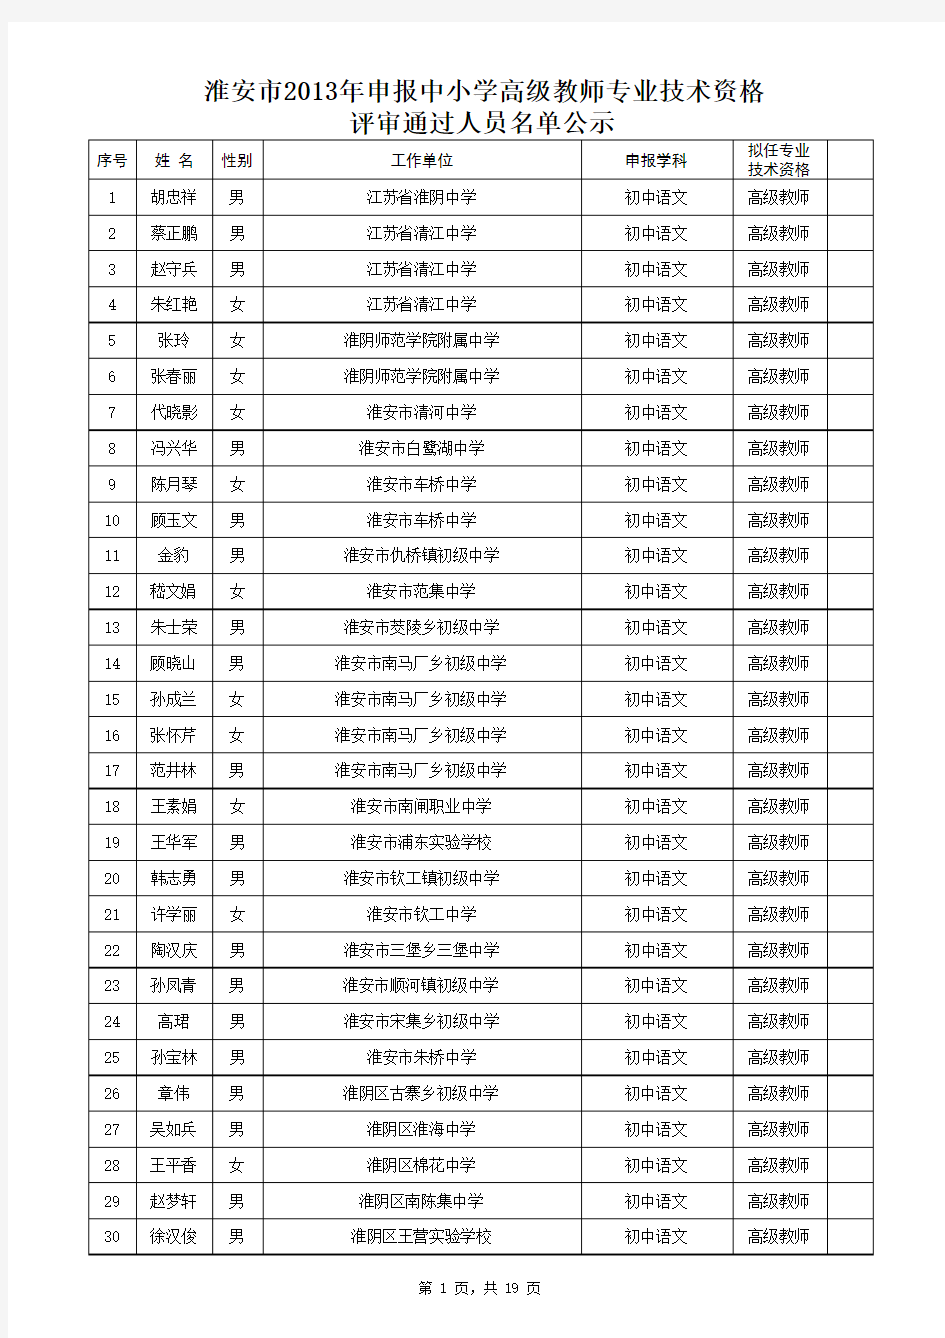 淮安市2013年申报中小学高级教师专业技术资格评审通过人员名单公示